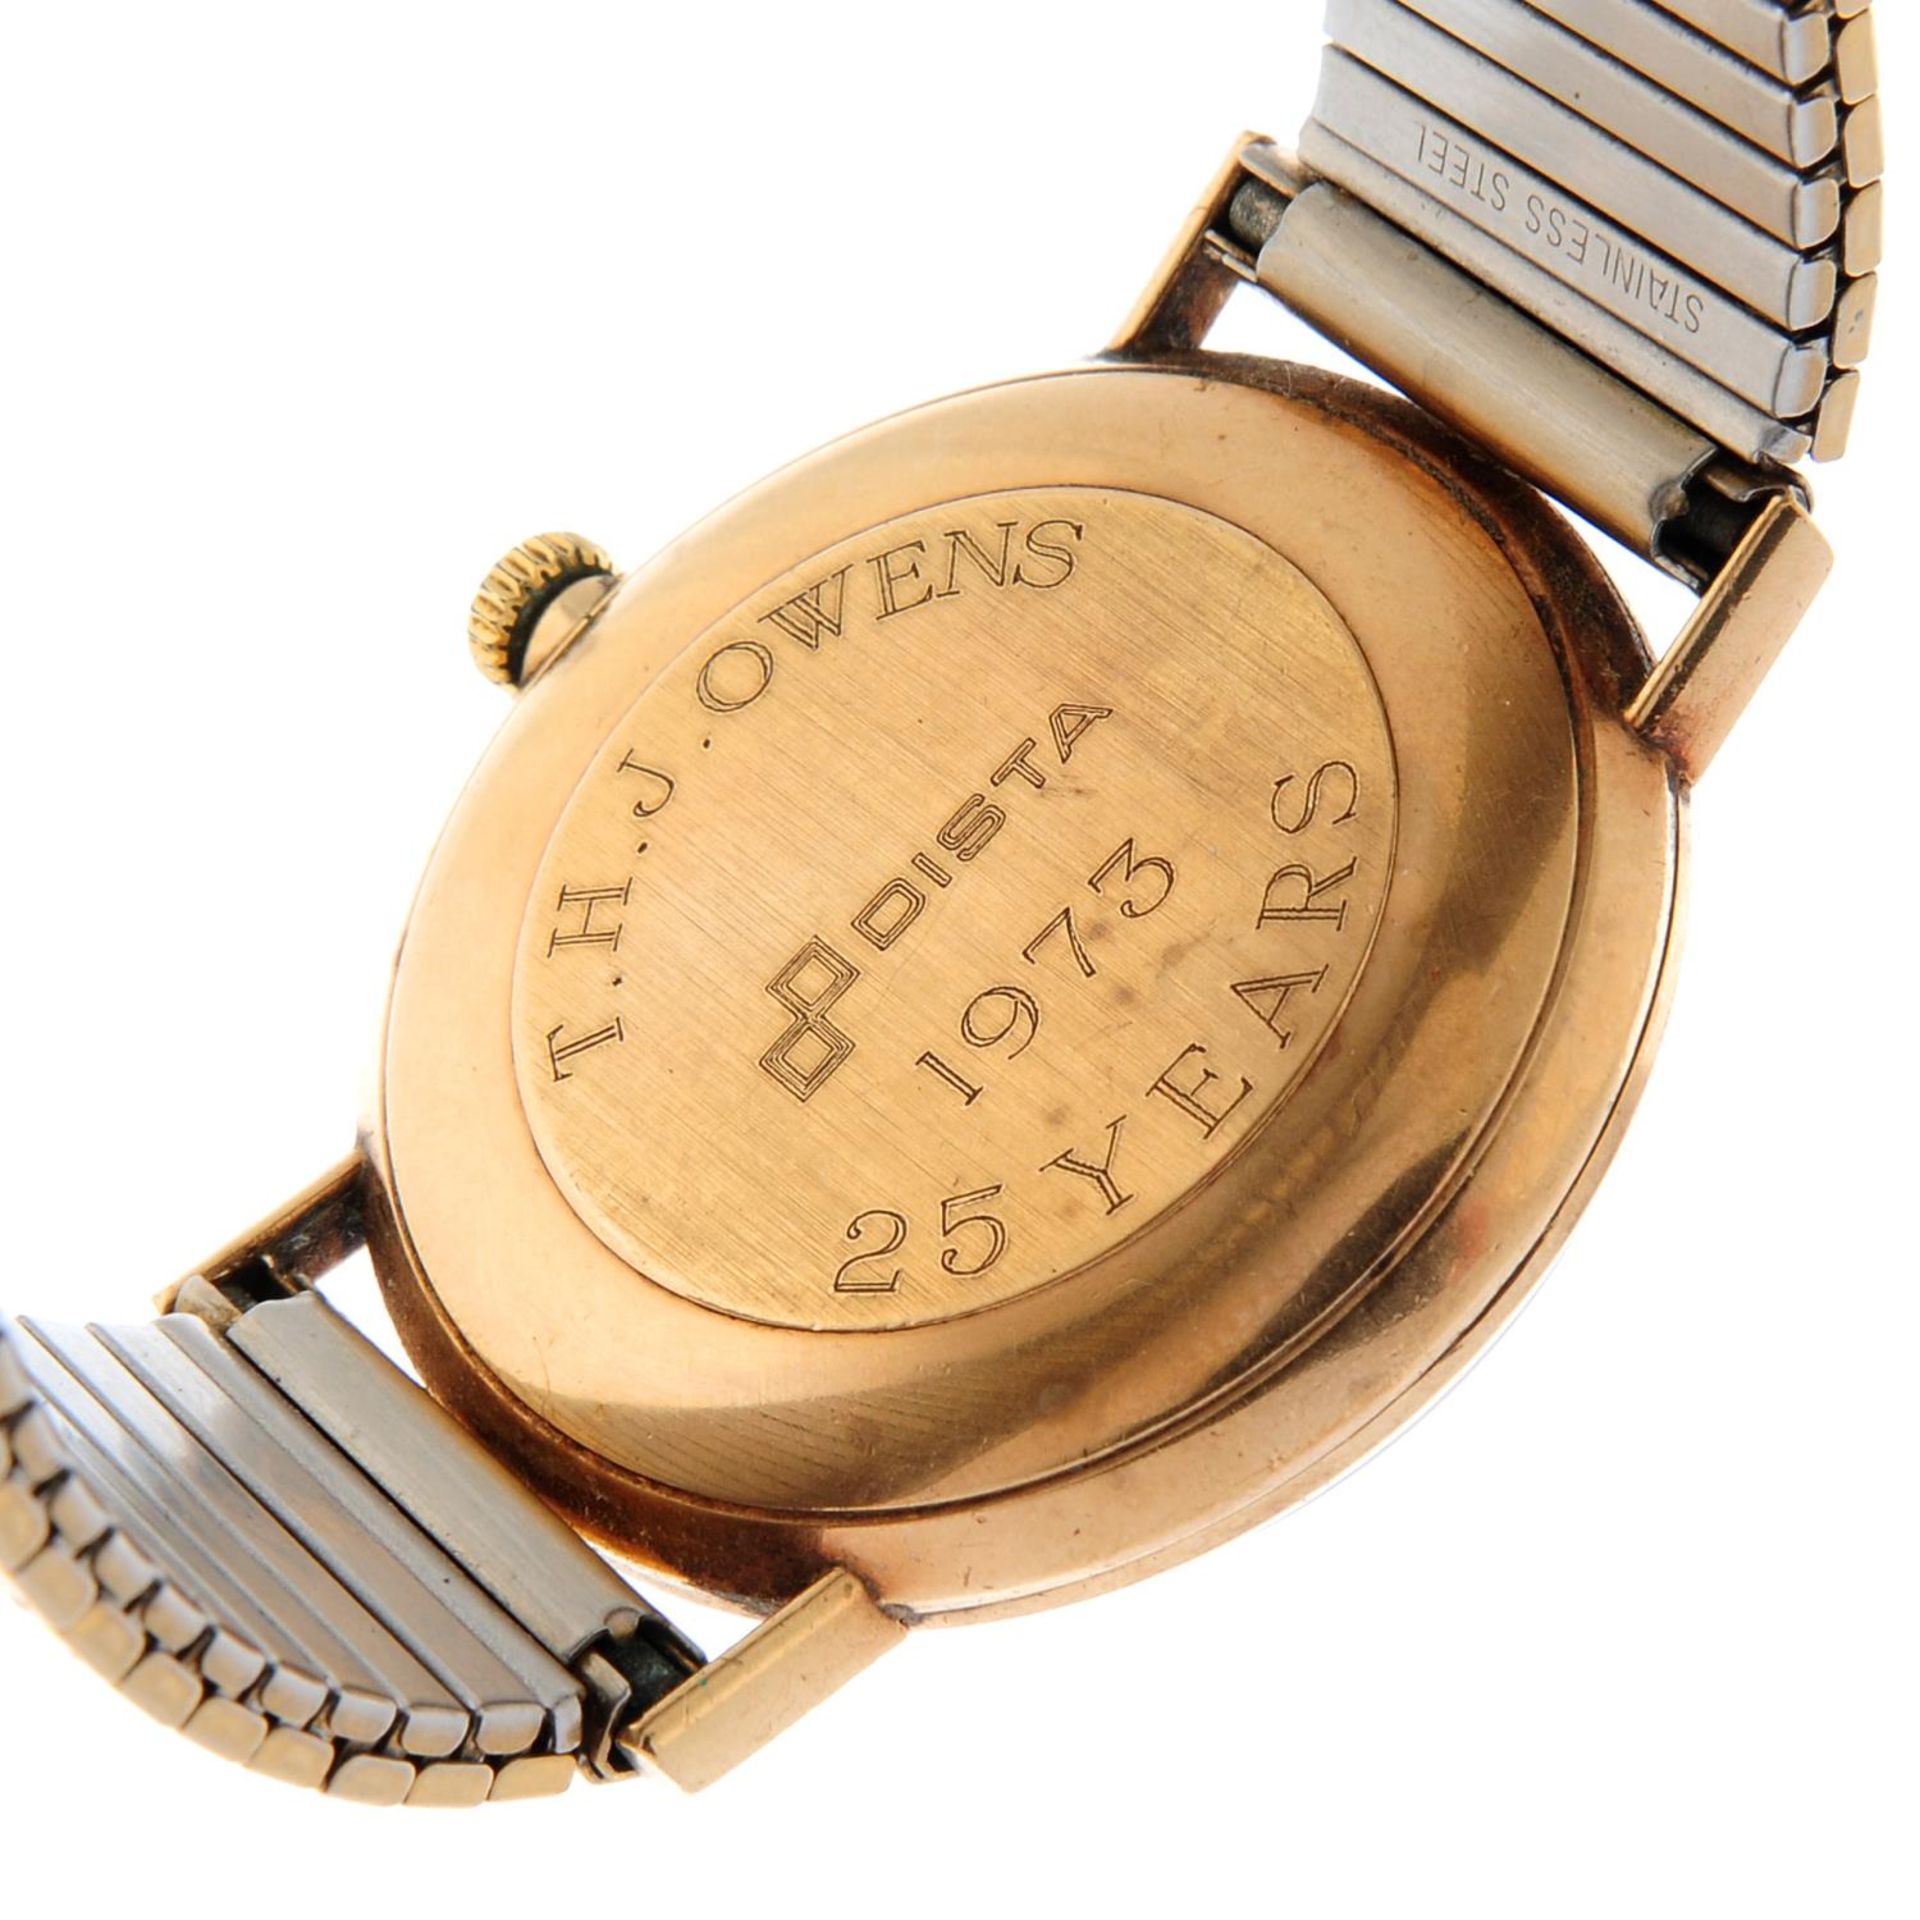 OMEGA - a Genève bracelet watch. - Image 4 of 4